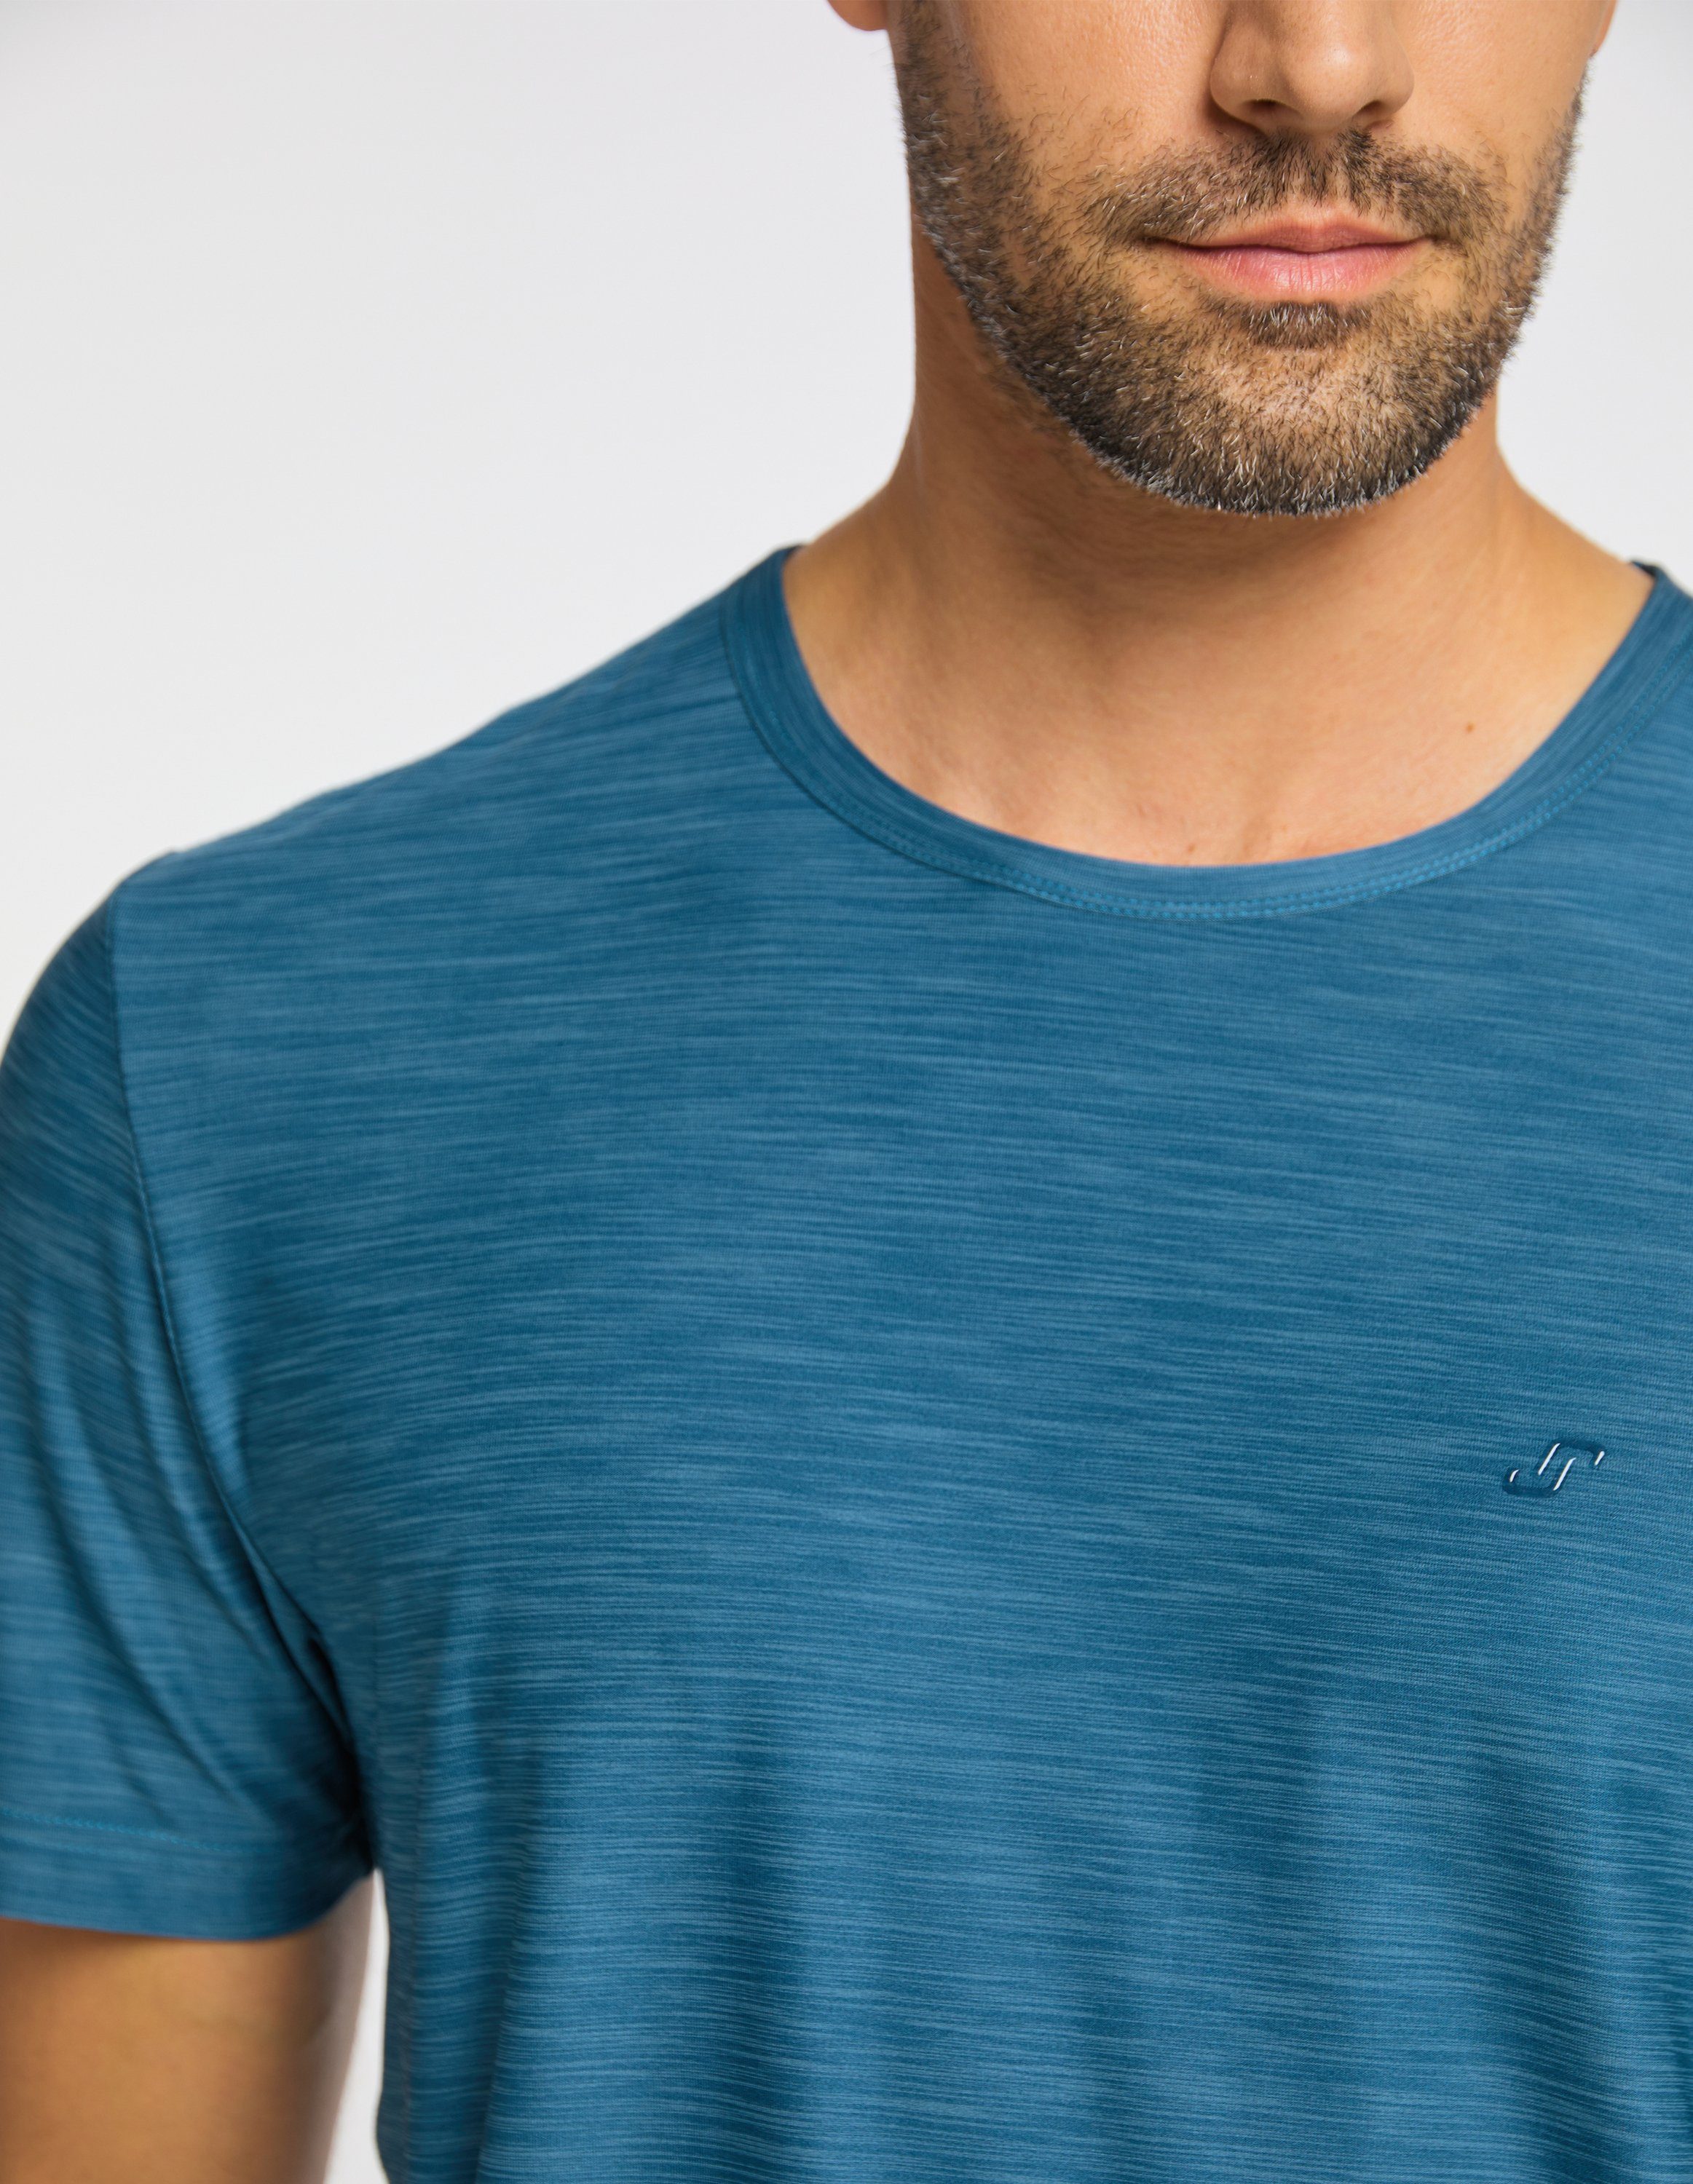 Joy Sportswear T-Shirt metallic T-Shirt blue melange VITUS